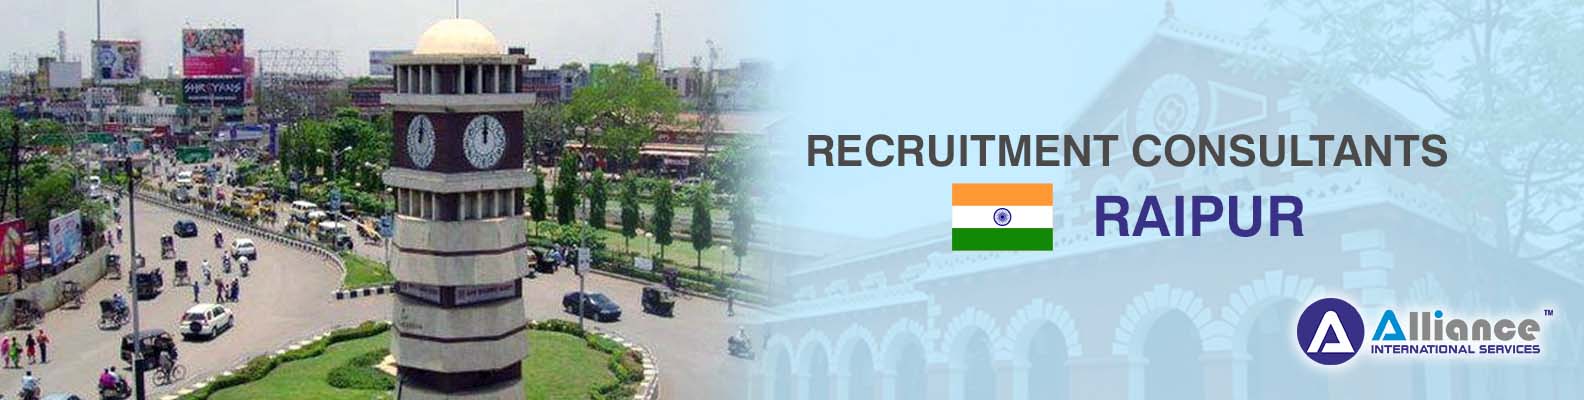 Recruitment Consultants Raipur